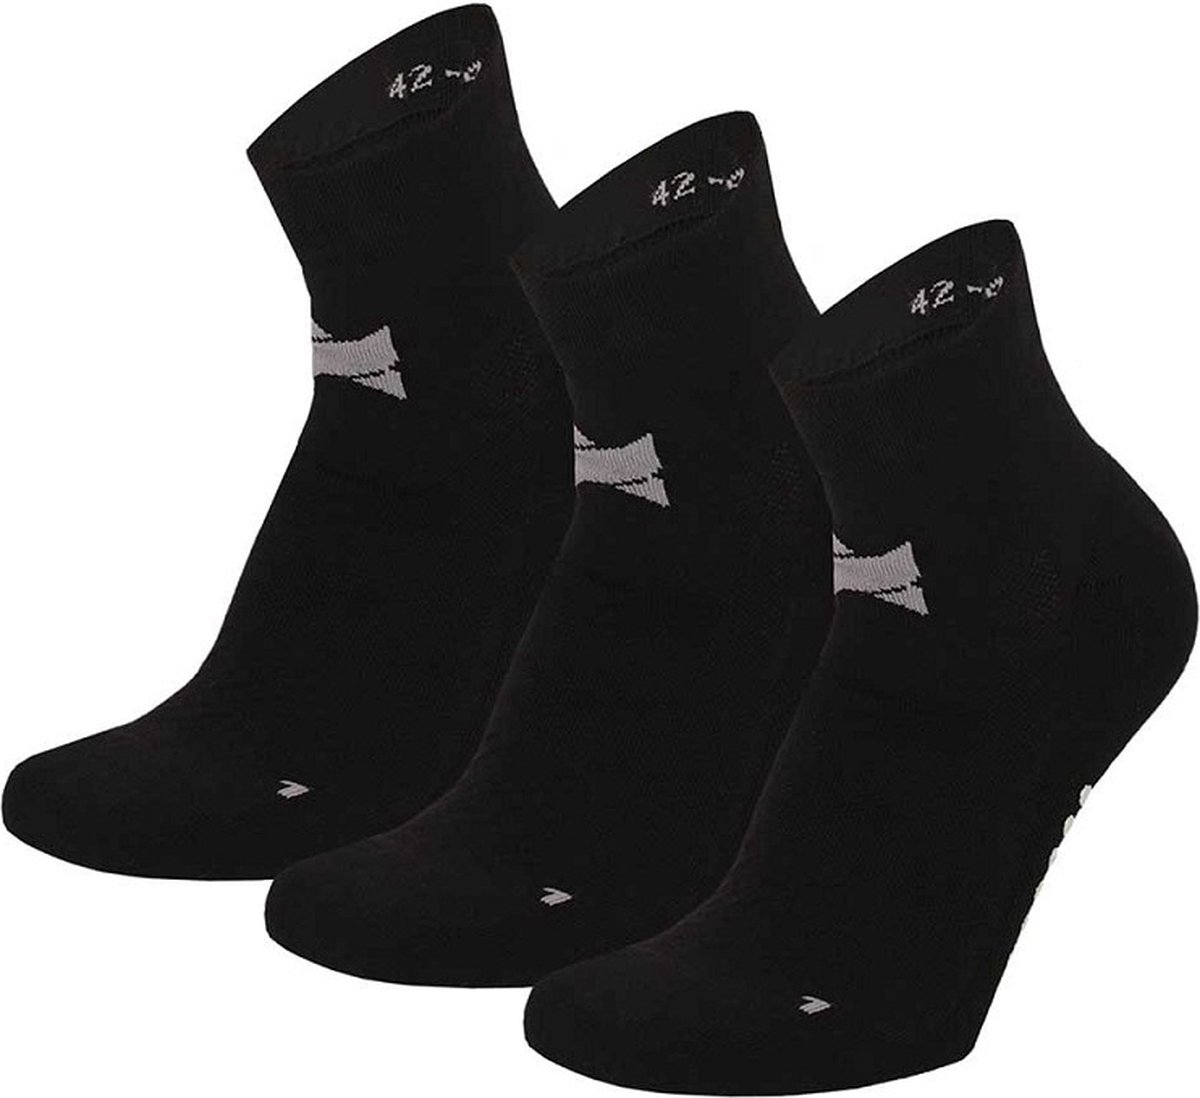 Xtreme Yoga Sokken Zwart - 3 paar - Pilates sokken - Antislip - Anatomisch voetbed - Maat 39/42